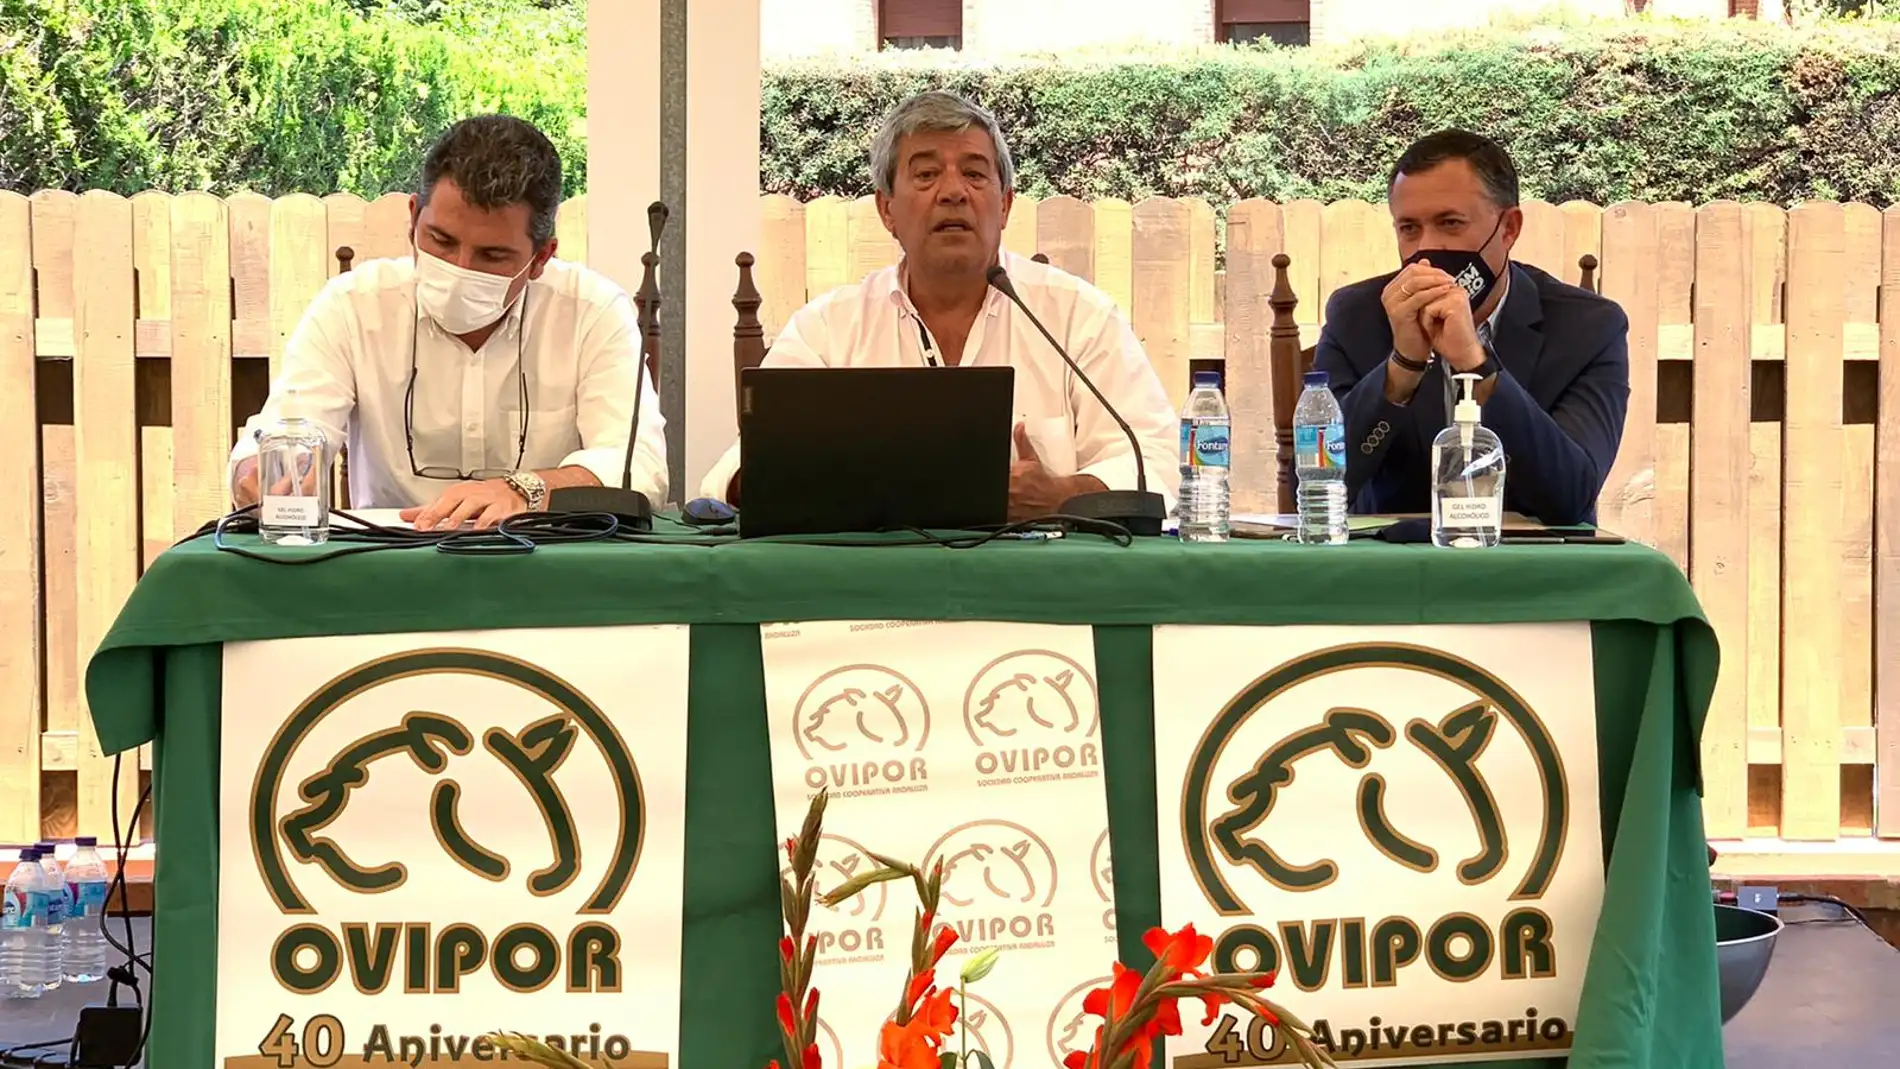 De izquierda a derecha: Álvaro Burgos, Delegado de Agricultura; Agustín González, Pte de Ovipor; y José Enrique Borrallo, Delegado de Desarrollo Rural